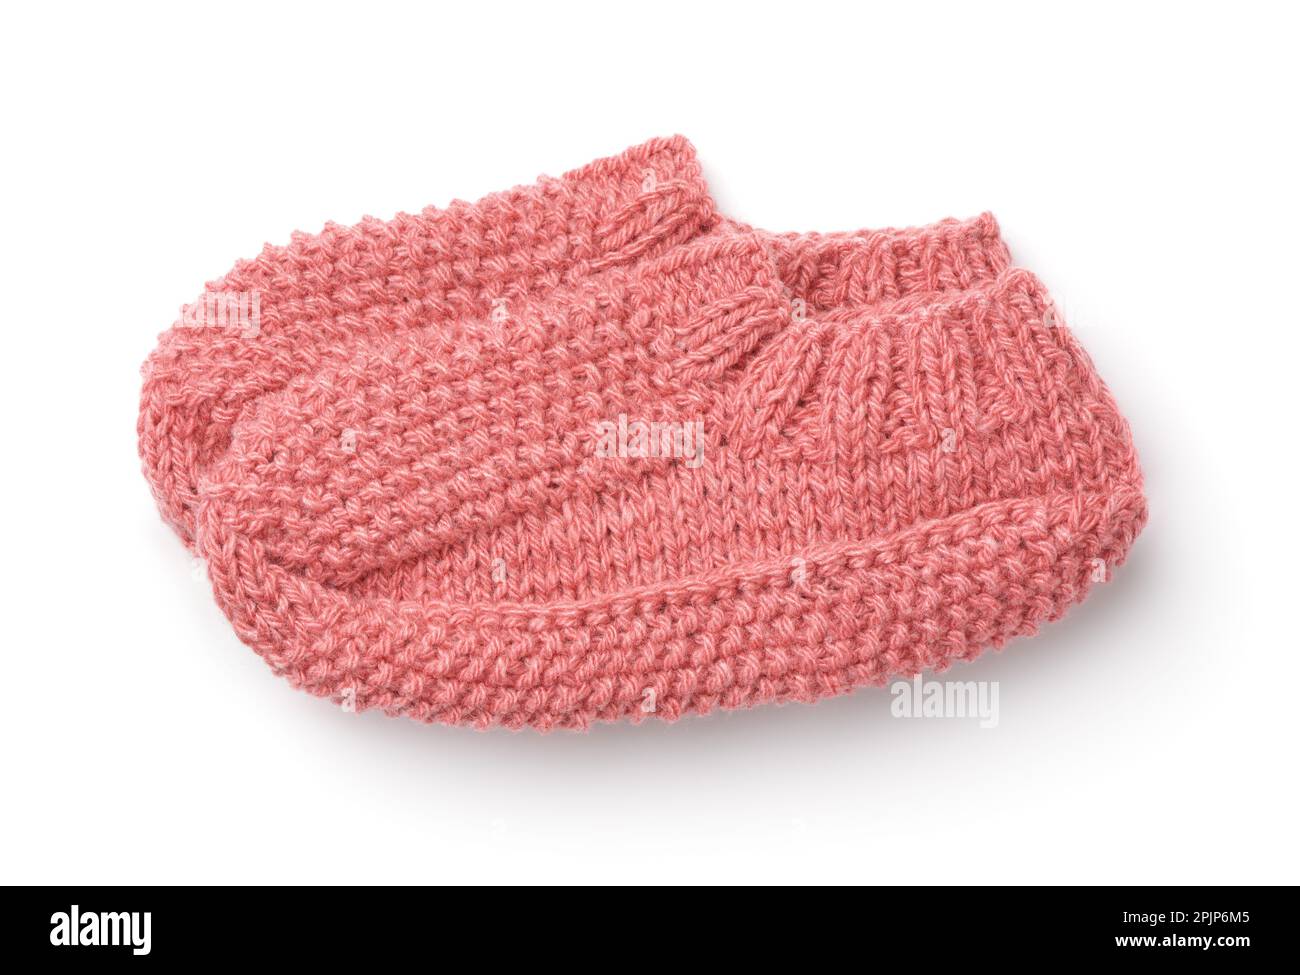 Vue latérale des chaussettes d'intérieur tricotées en laine rose isolées sur du blanc Banque D'Images